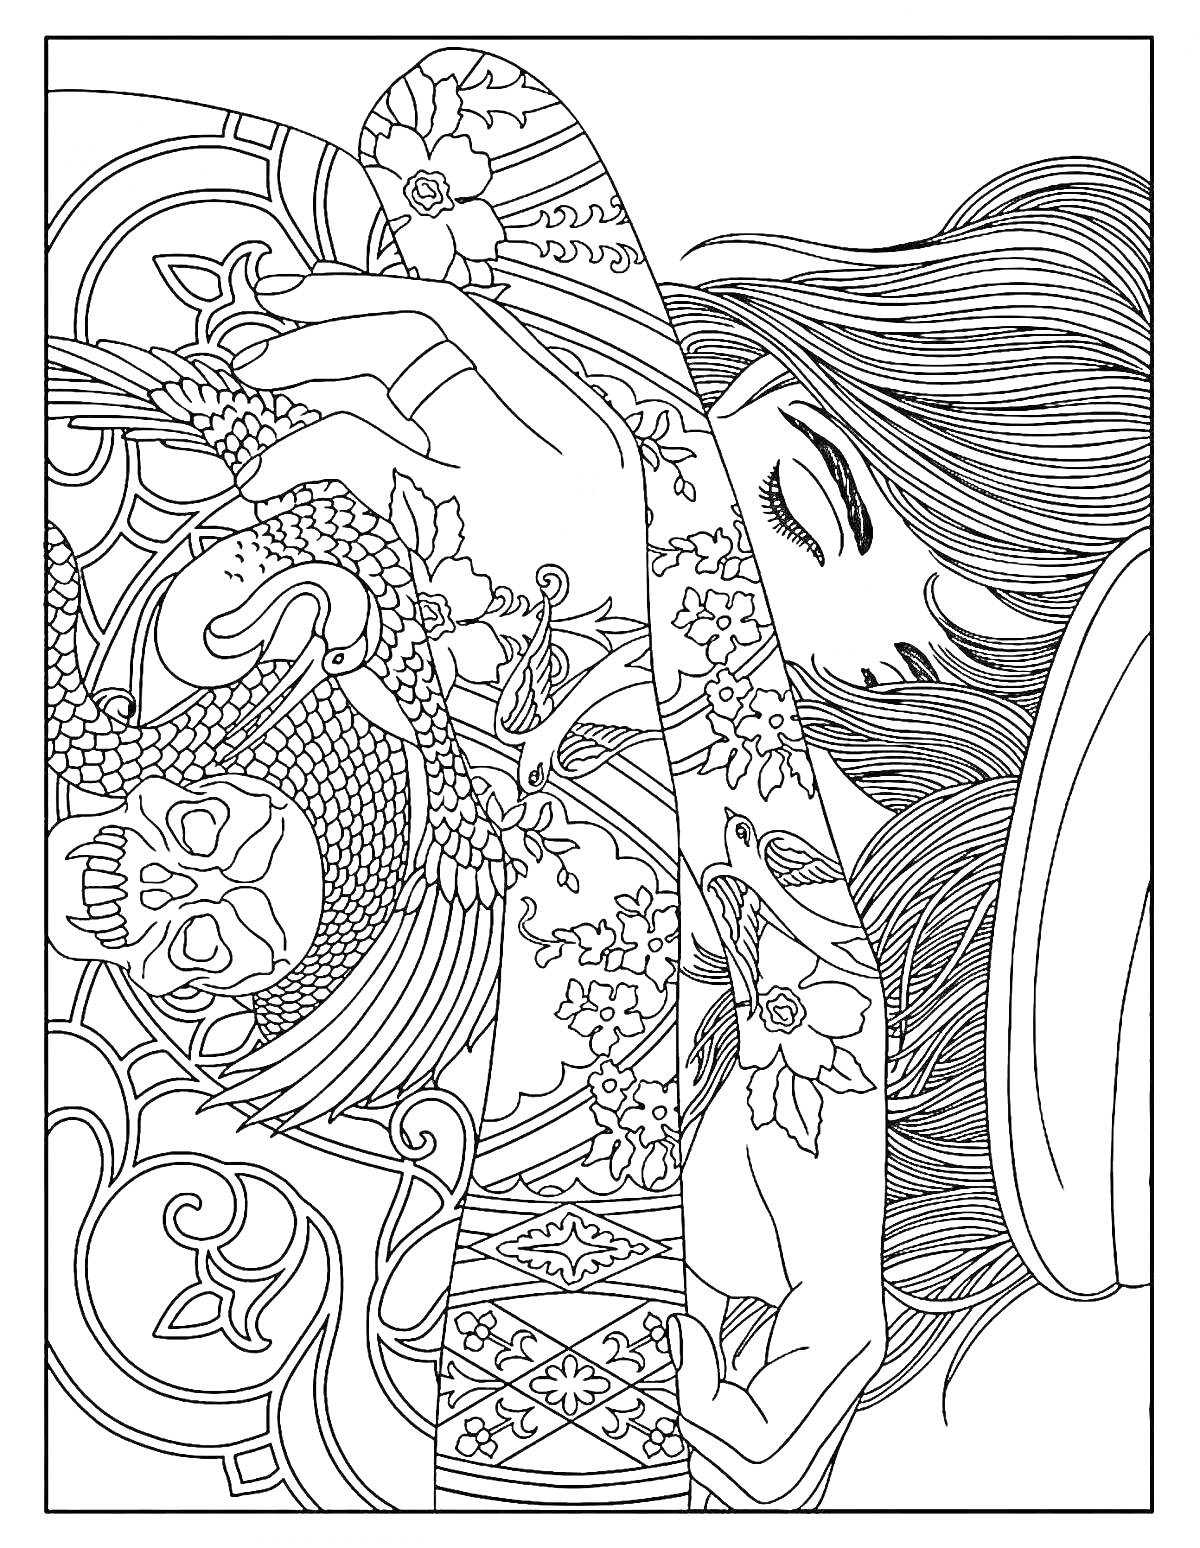 Раскраска Женщина с татуировками дракона, черепа и цветами на фоне завитков и узоров